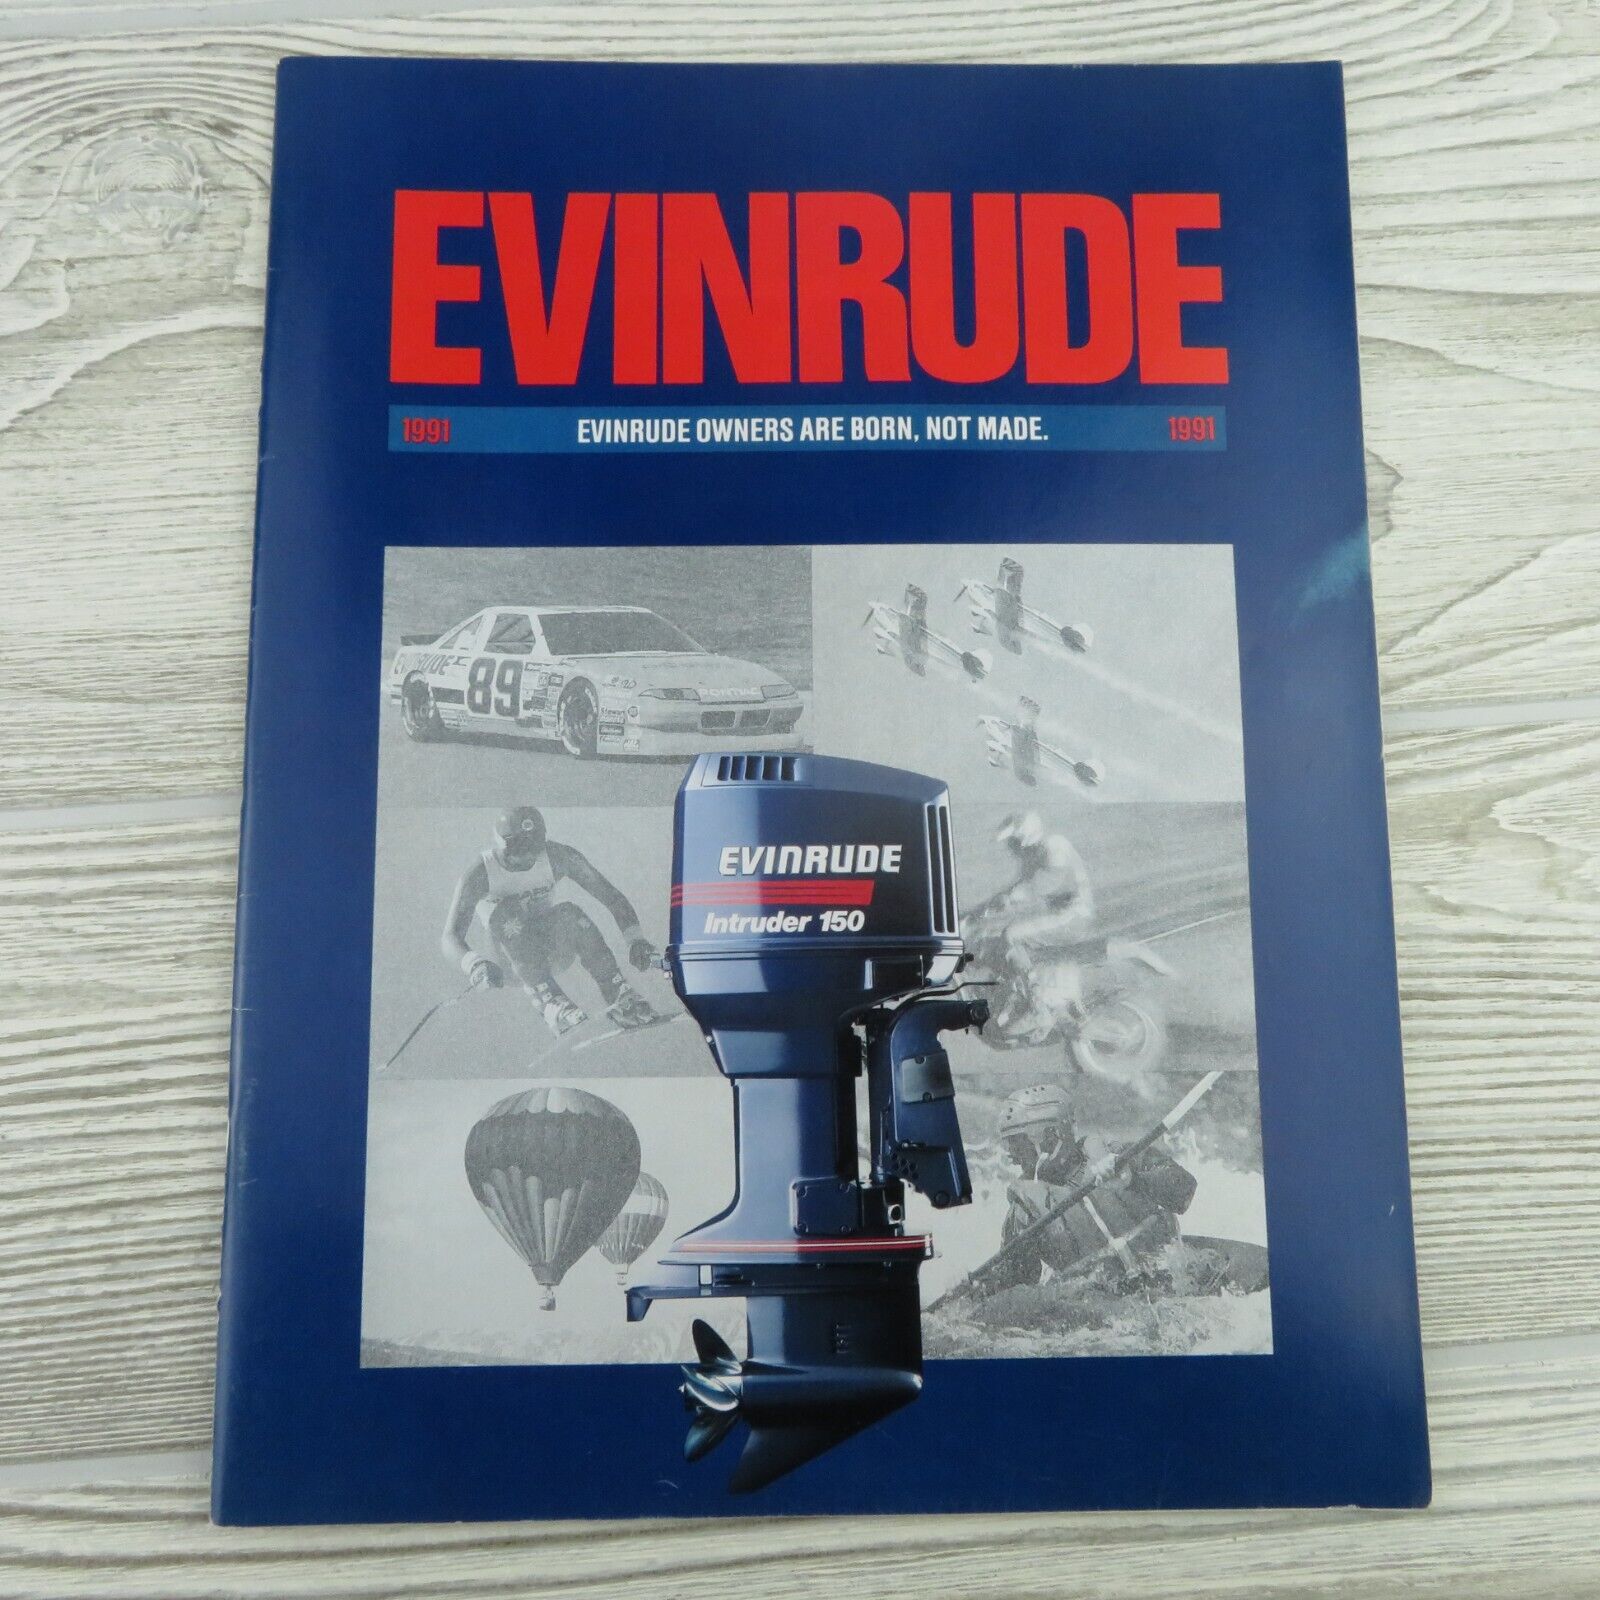 Evinrude - Outboards - 1991 - Brochure / Catalog - Dealership - Color - VTG